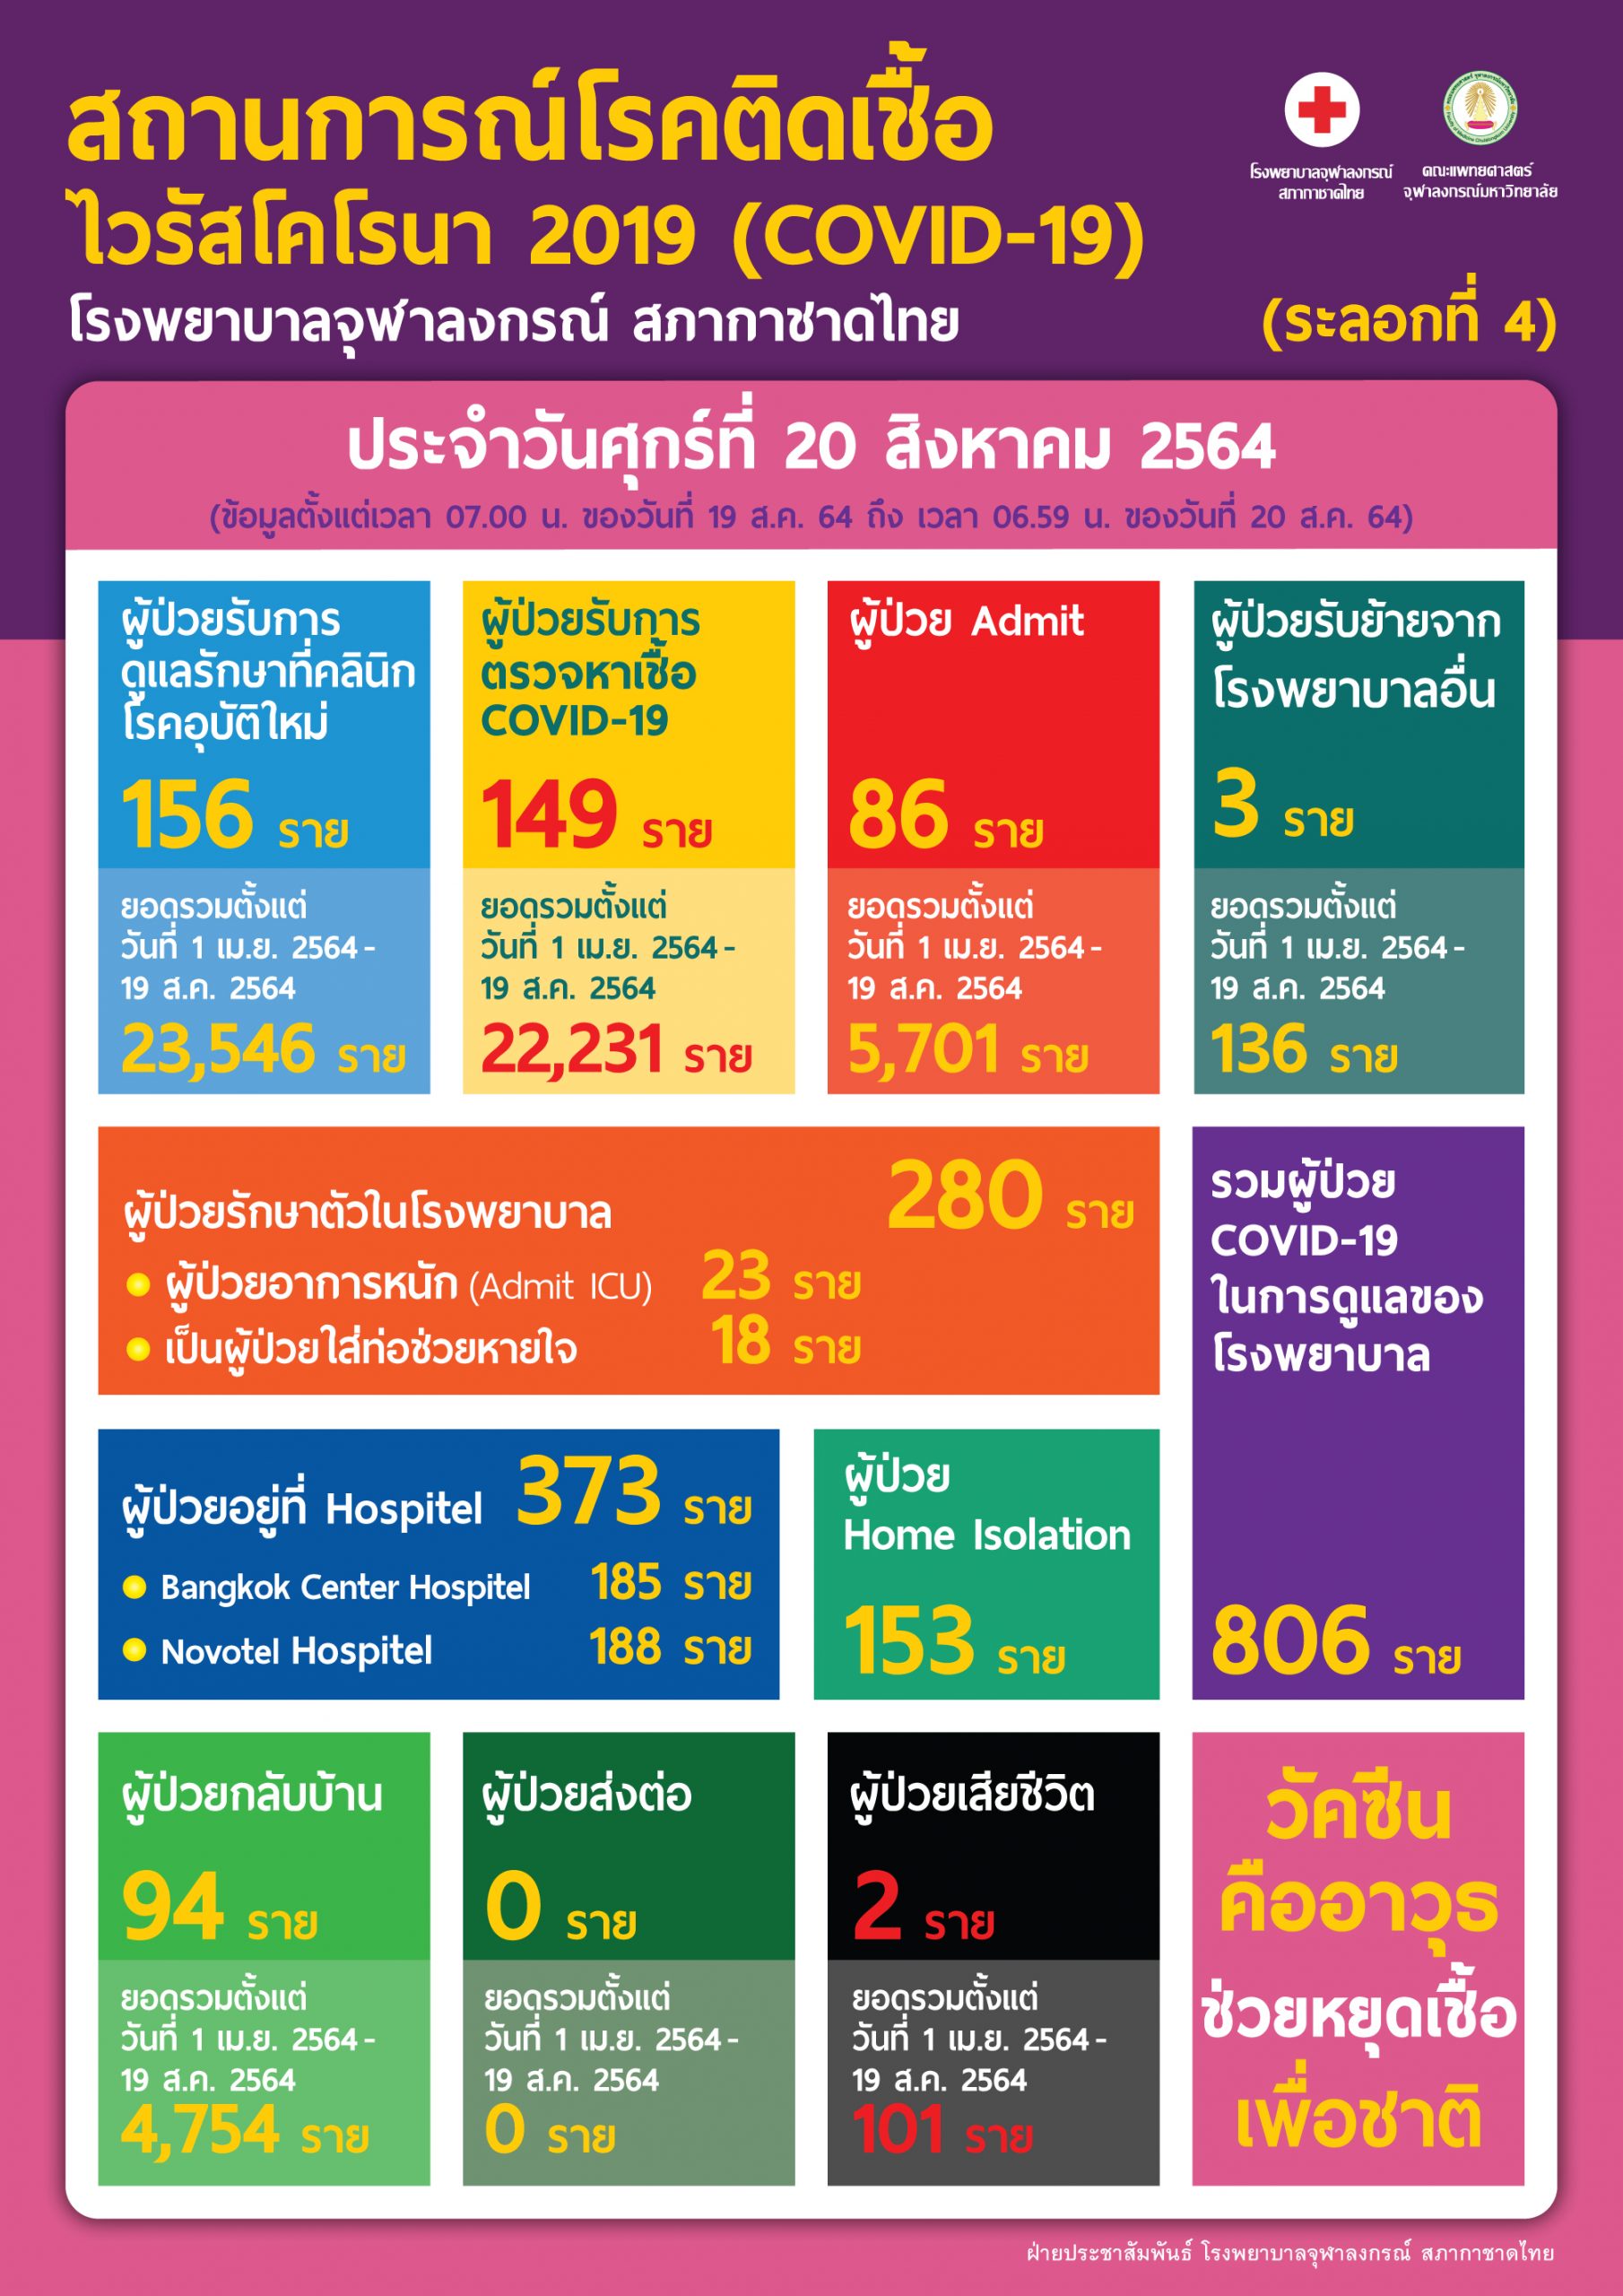 สถานการณ์โรคติดเชื้อไวรัสโคโรนา 2019 (COVID-19) (ระลอกที่ 4) โรงพยาบาลจุฬาลงกรณ์ สภากาชาดไทย  ประจำวันศุกร์ที่ 20 สิงหาคม 2564